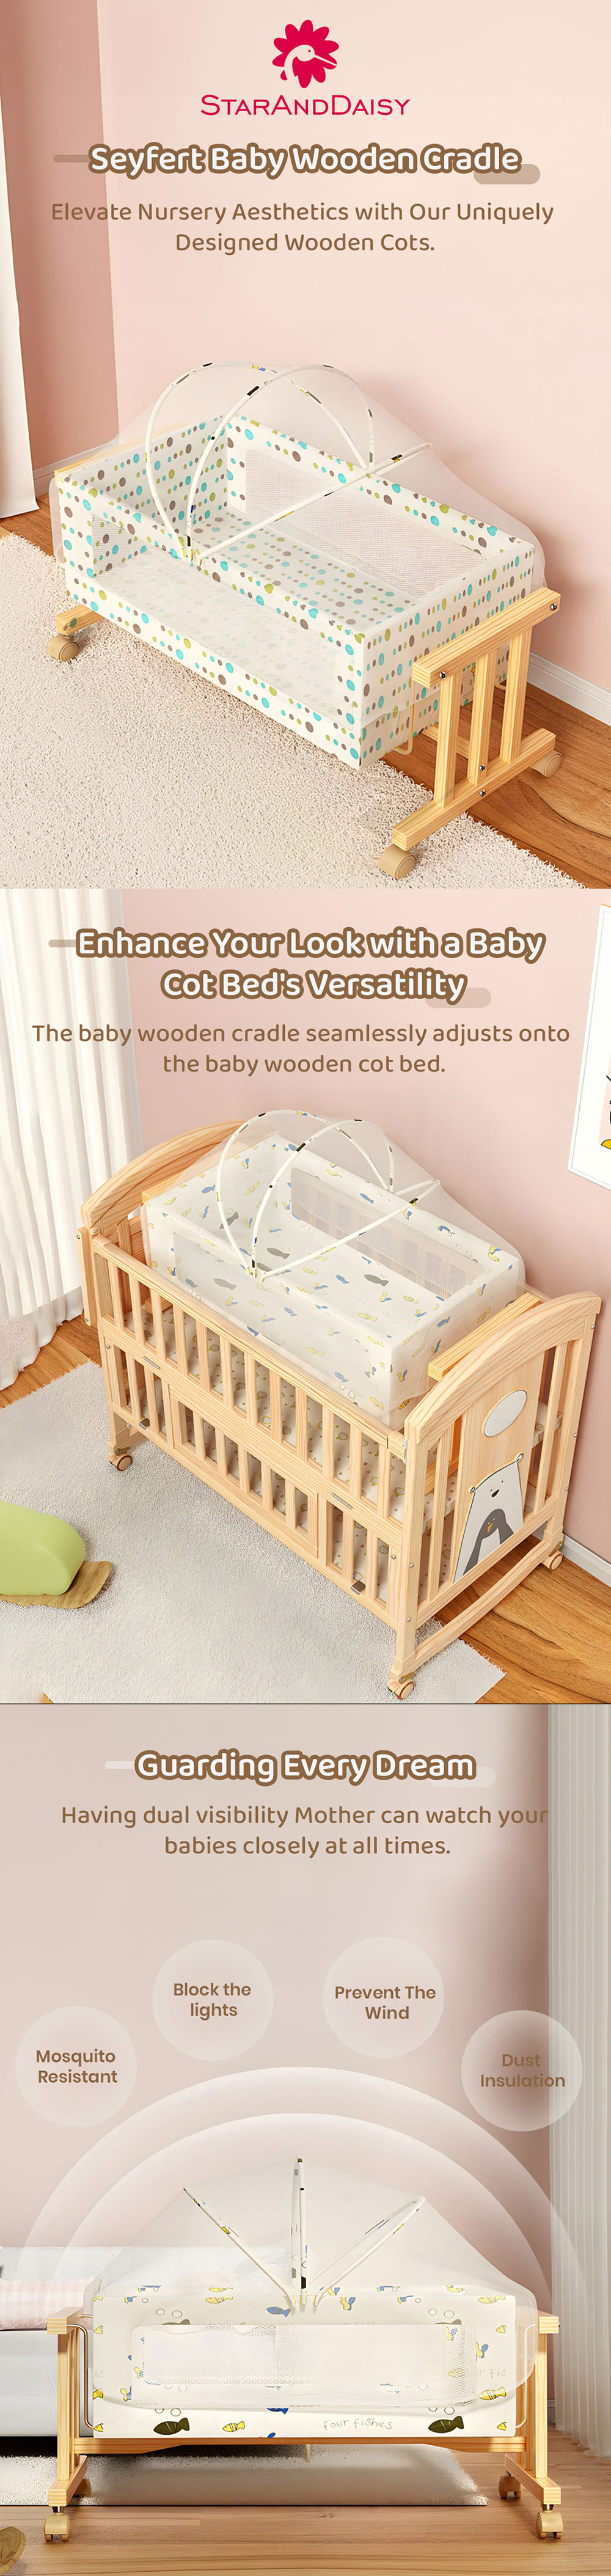 Sayfert Baby Wooden Cradle